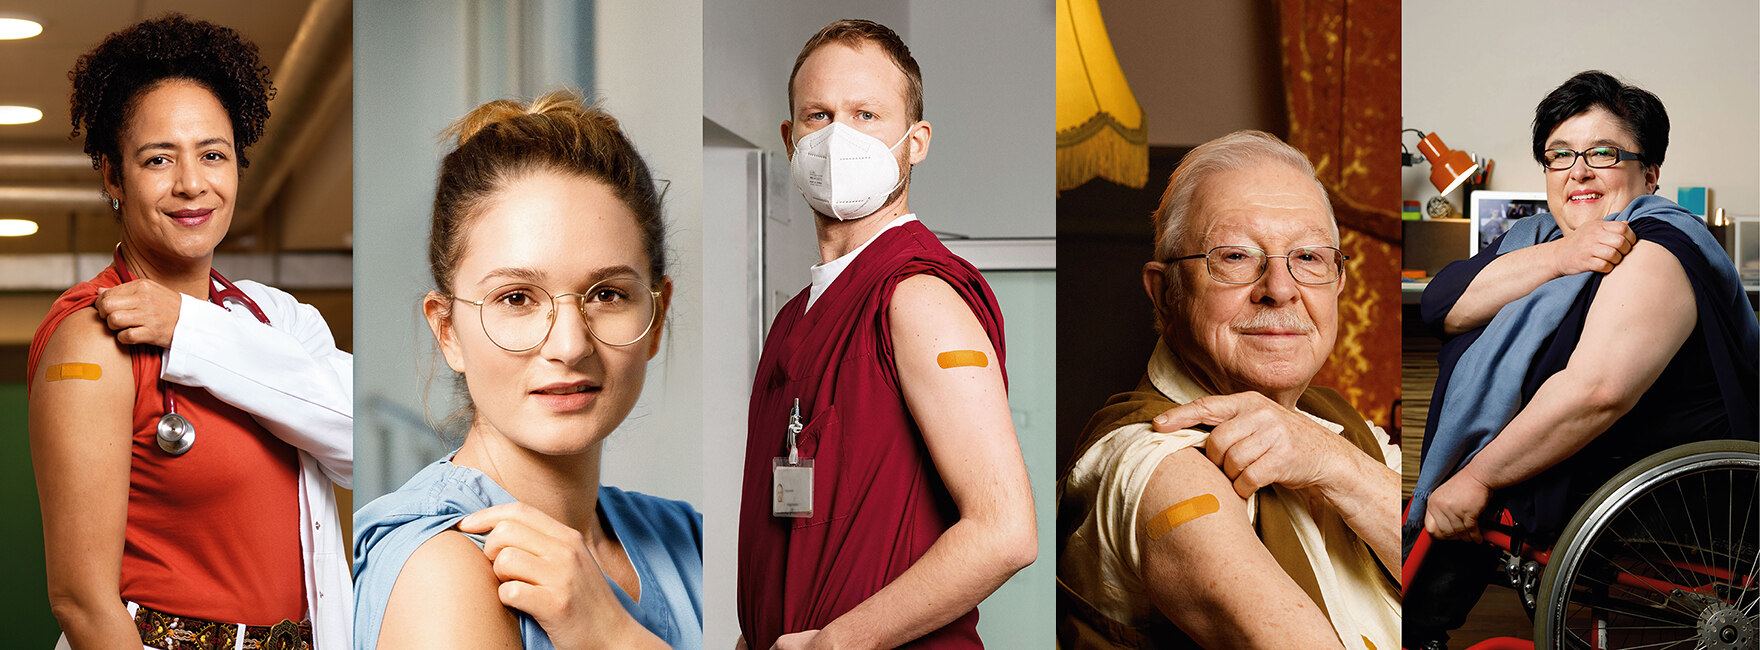 Collage aus 5 Fotos von Menschen, die einen hochgekrempelten Oberarm zeigen, zum Teil mit Pflaster